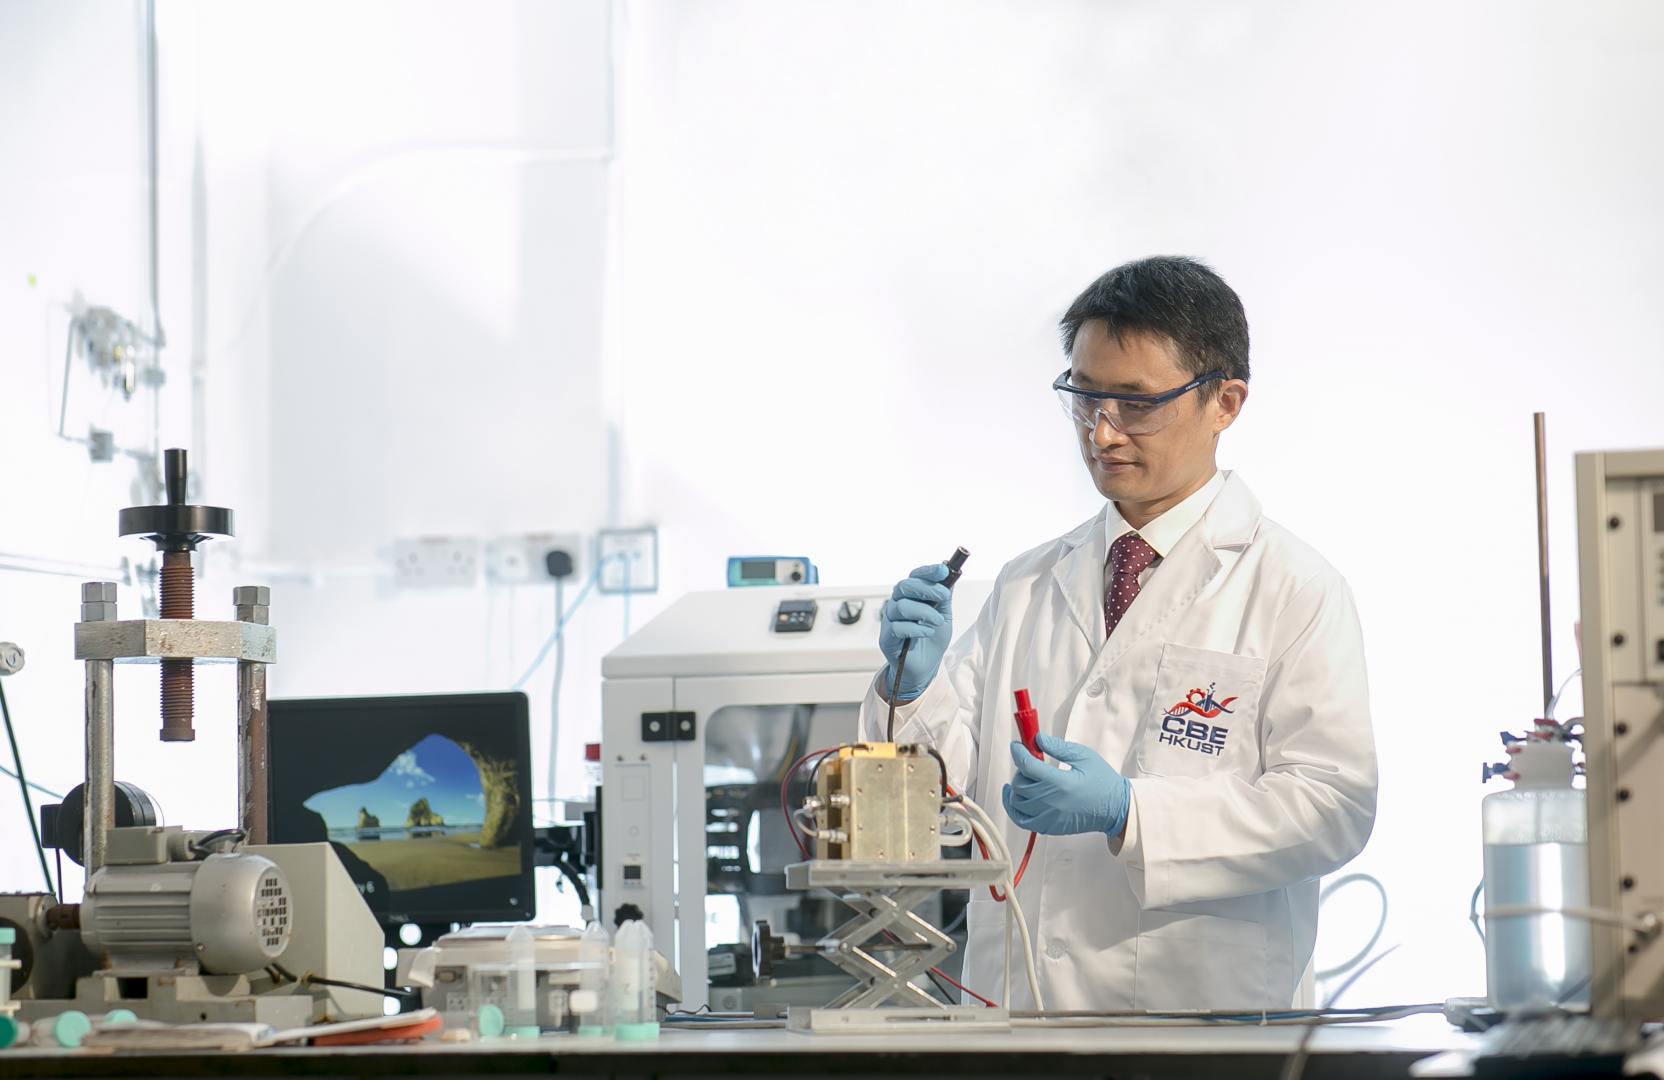 科大化學及生物工程學系教授兼科大能源研究院院長邵敏華教授手持氫燃料電池原型(prototype)